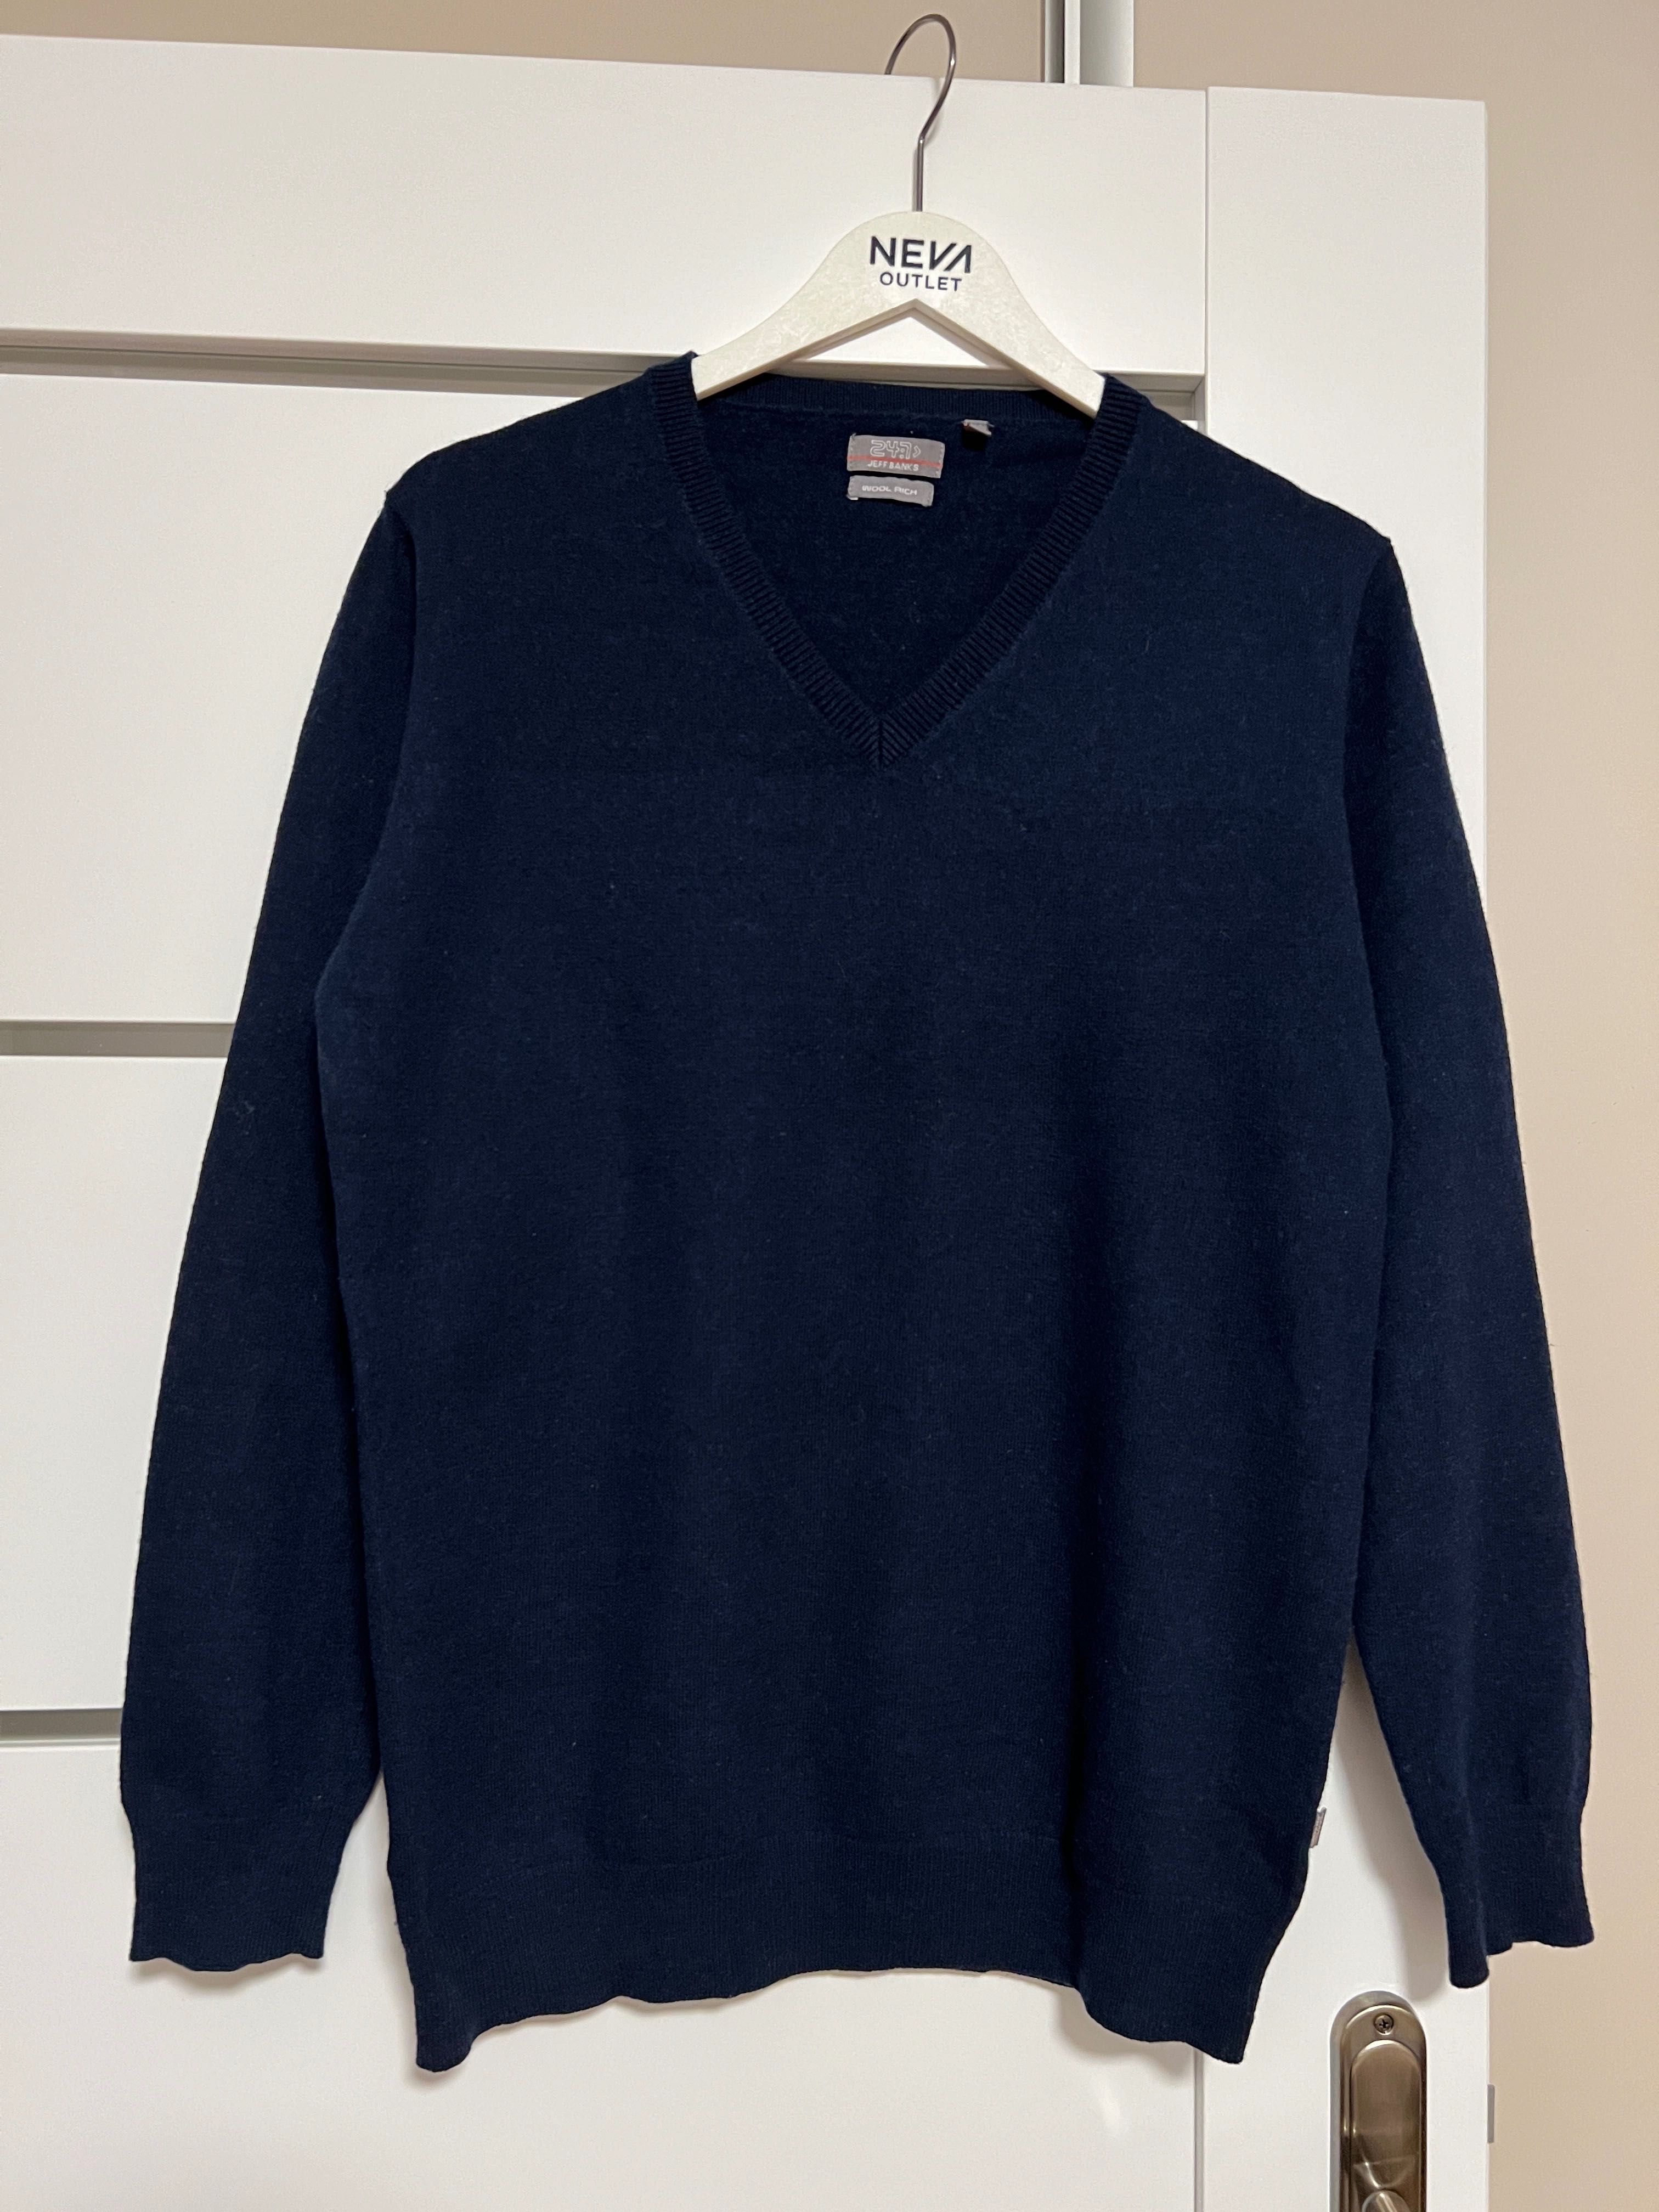 Granatowy ciepły sweter męski marki Jeff Banks